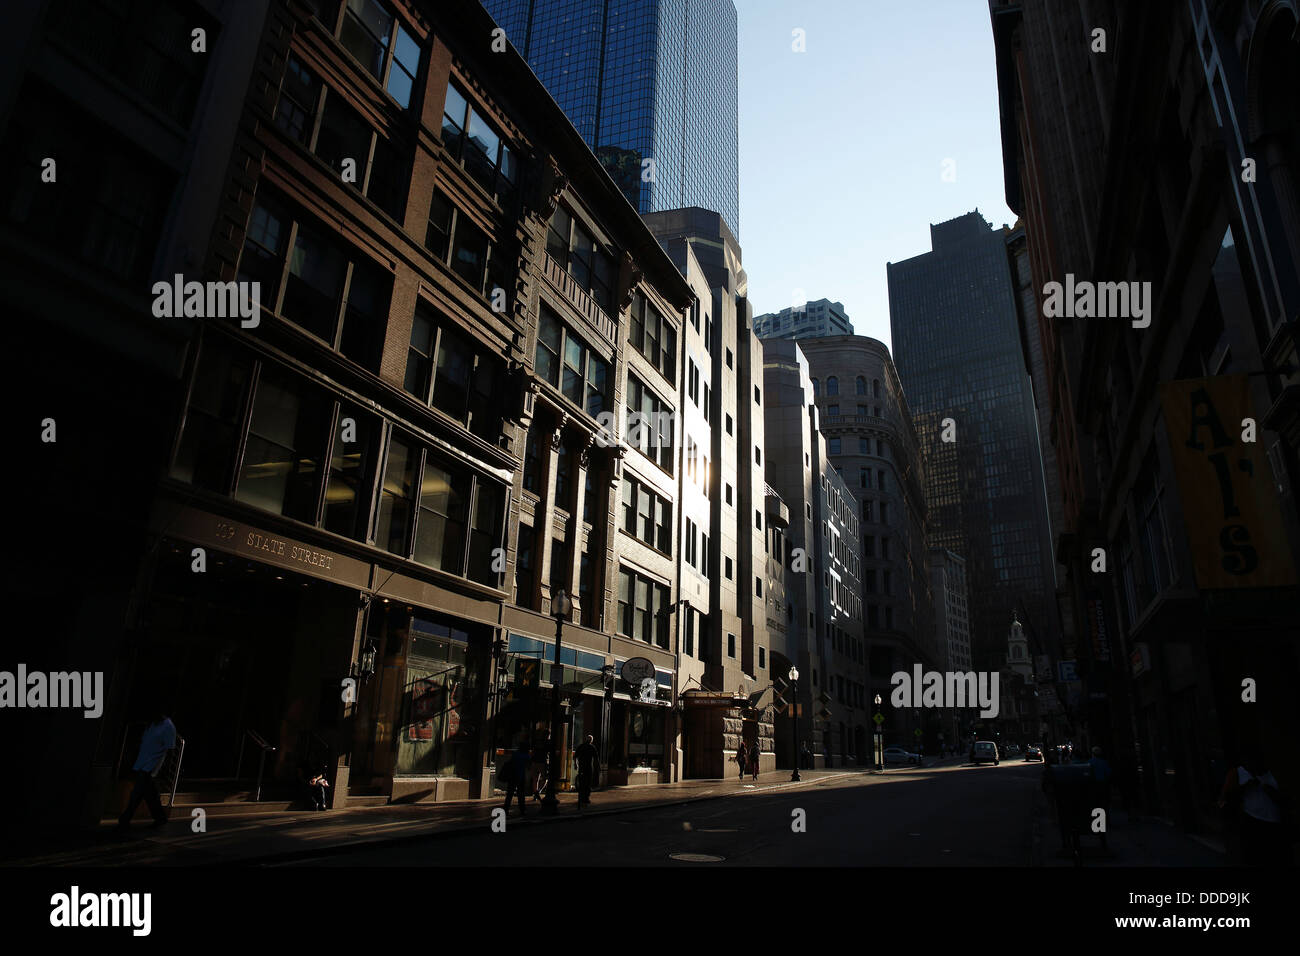 Afternoon sun on buildings, State Street, Boston, Massachusetts Stock Photo